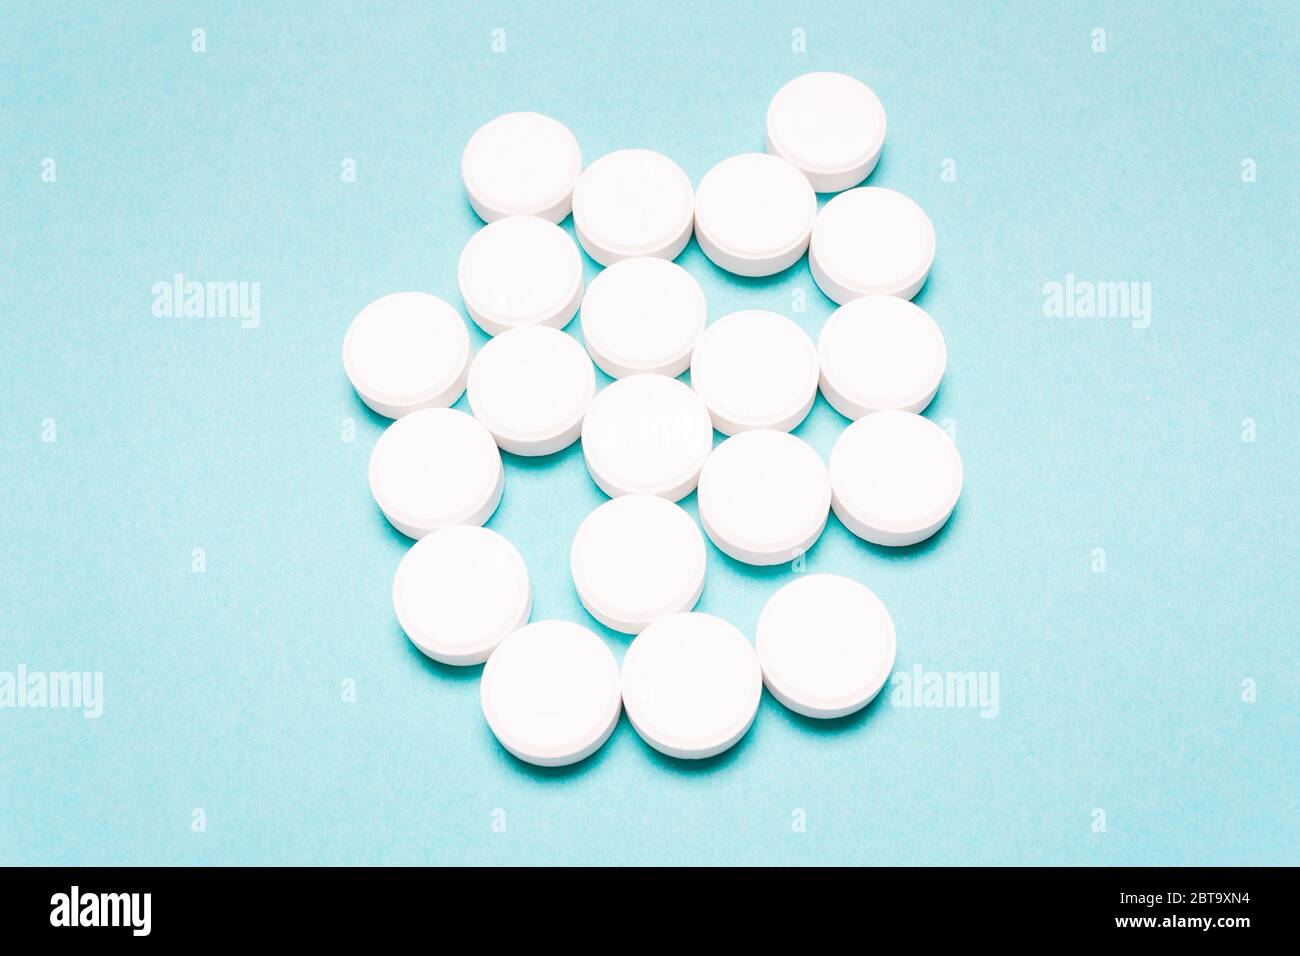 Pilules rondes et blanches sur fond bleu. Concept de traitement de la maladie, soins de santé Banque D'Images